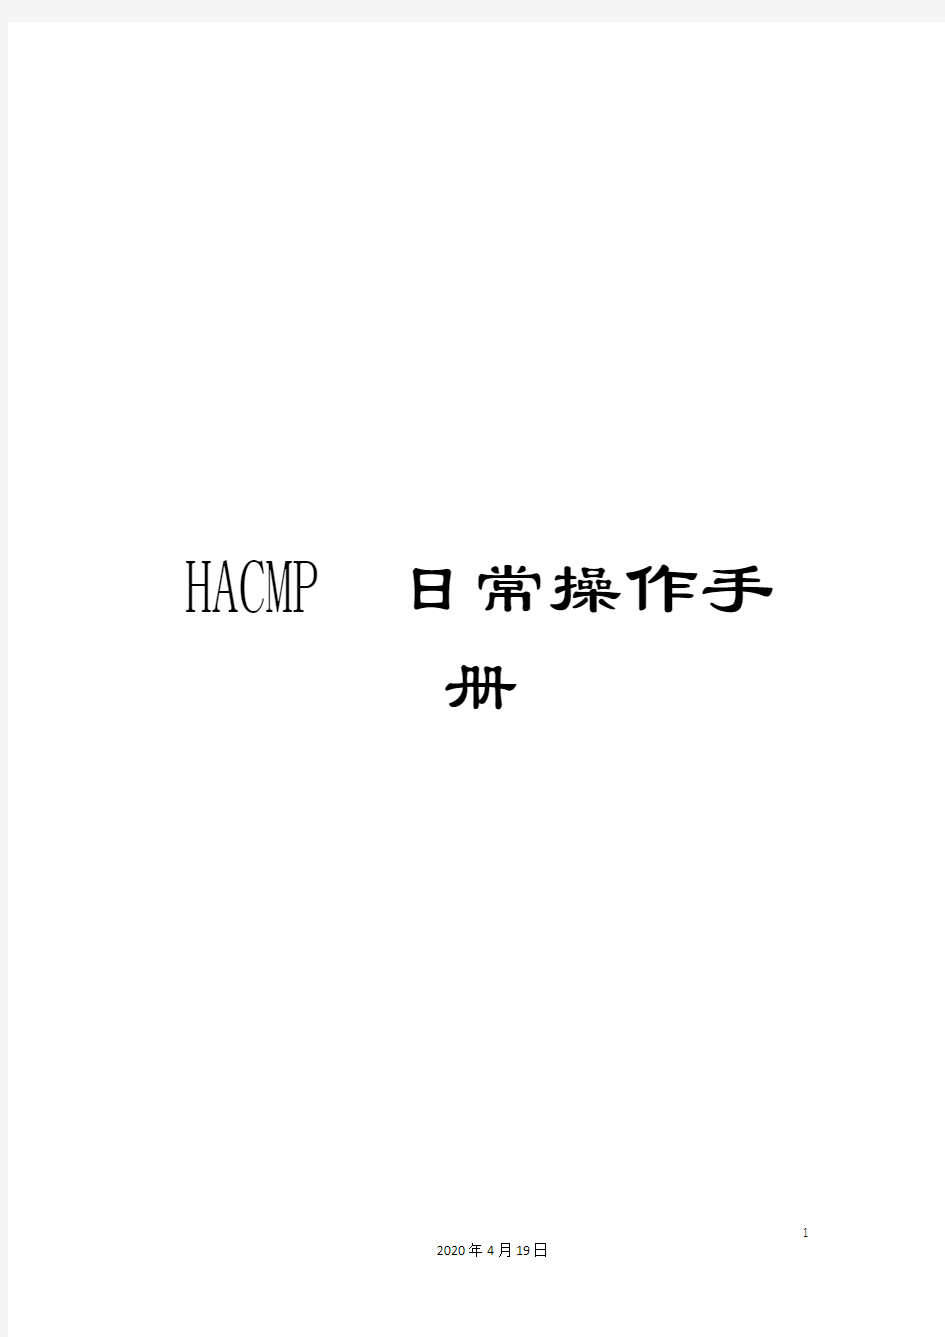 HACMP日常操作手册